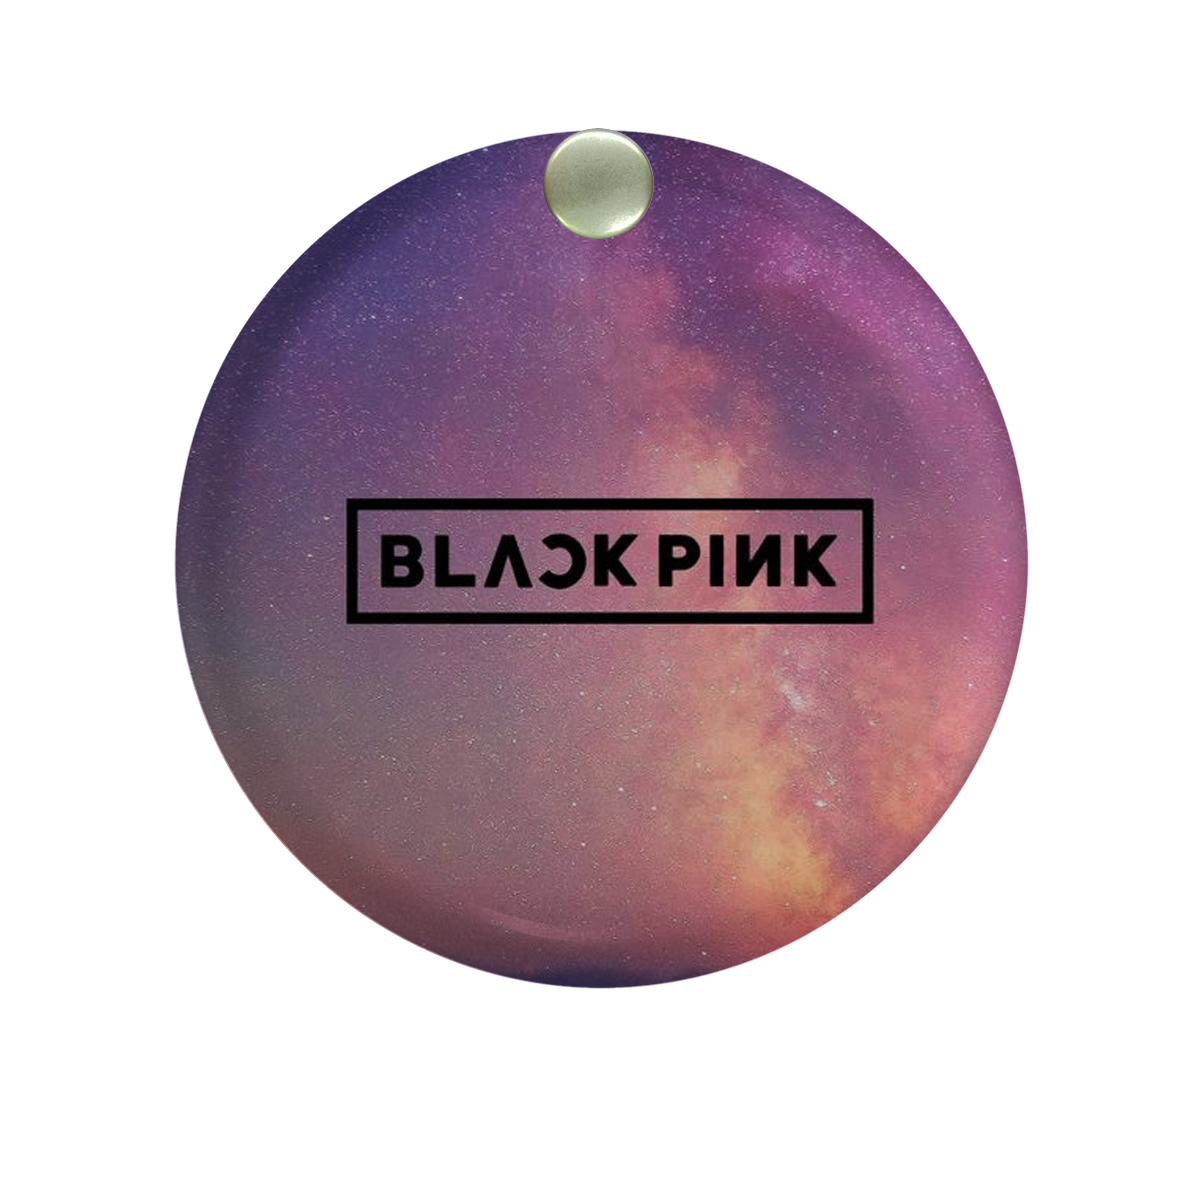 آینه جیبی طرح Black pink کد ai68